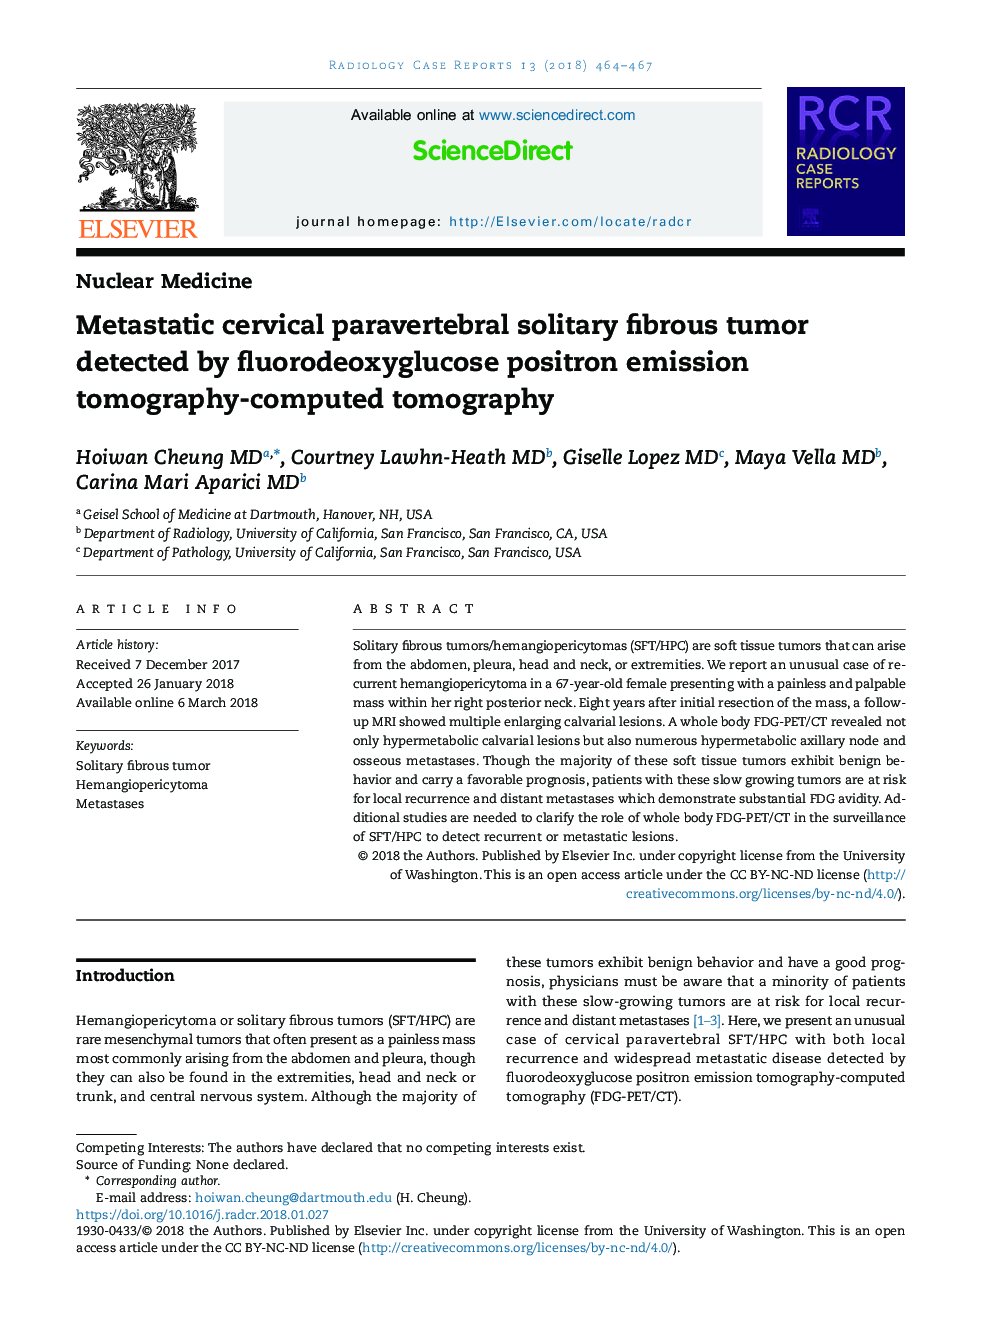 تومور فیبری انفرادی متاستاتیک پاراوبرترلبال که توسط توموگرافی کامپوزیت منتشر شده از پوسیدر فلوئوریدسو گلوکوز تشخیص داده می شود 